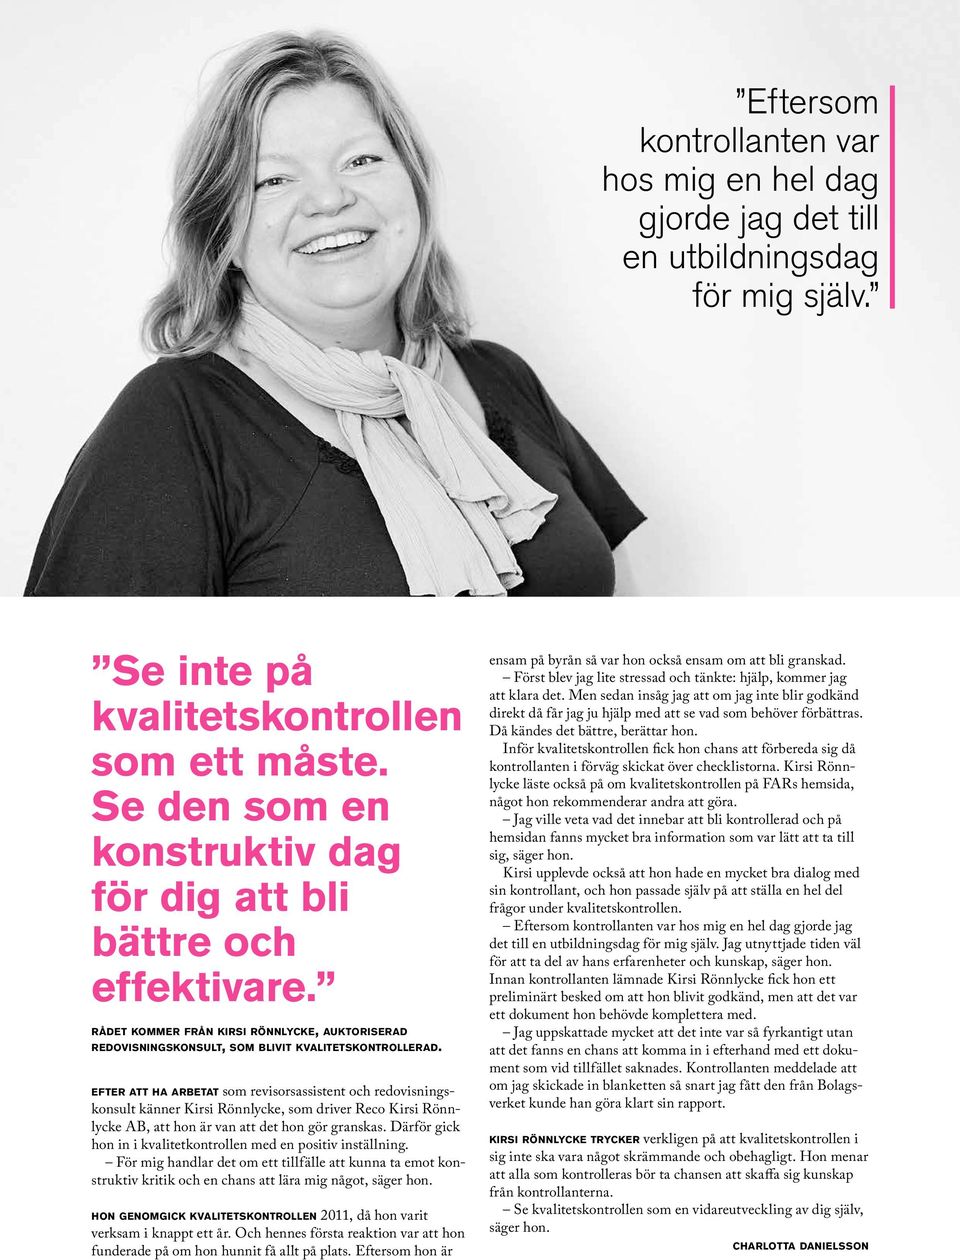 efter att ha arbetat som revisorsassistent och redovisningskonsult känner Kirsi Rönnlycke, som driver Reco Kirsi Rönnlycke AB, att hon är van att det hon gör granskas.